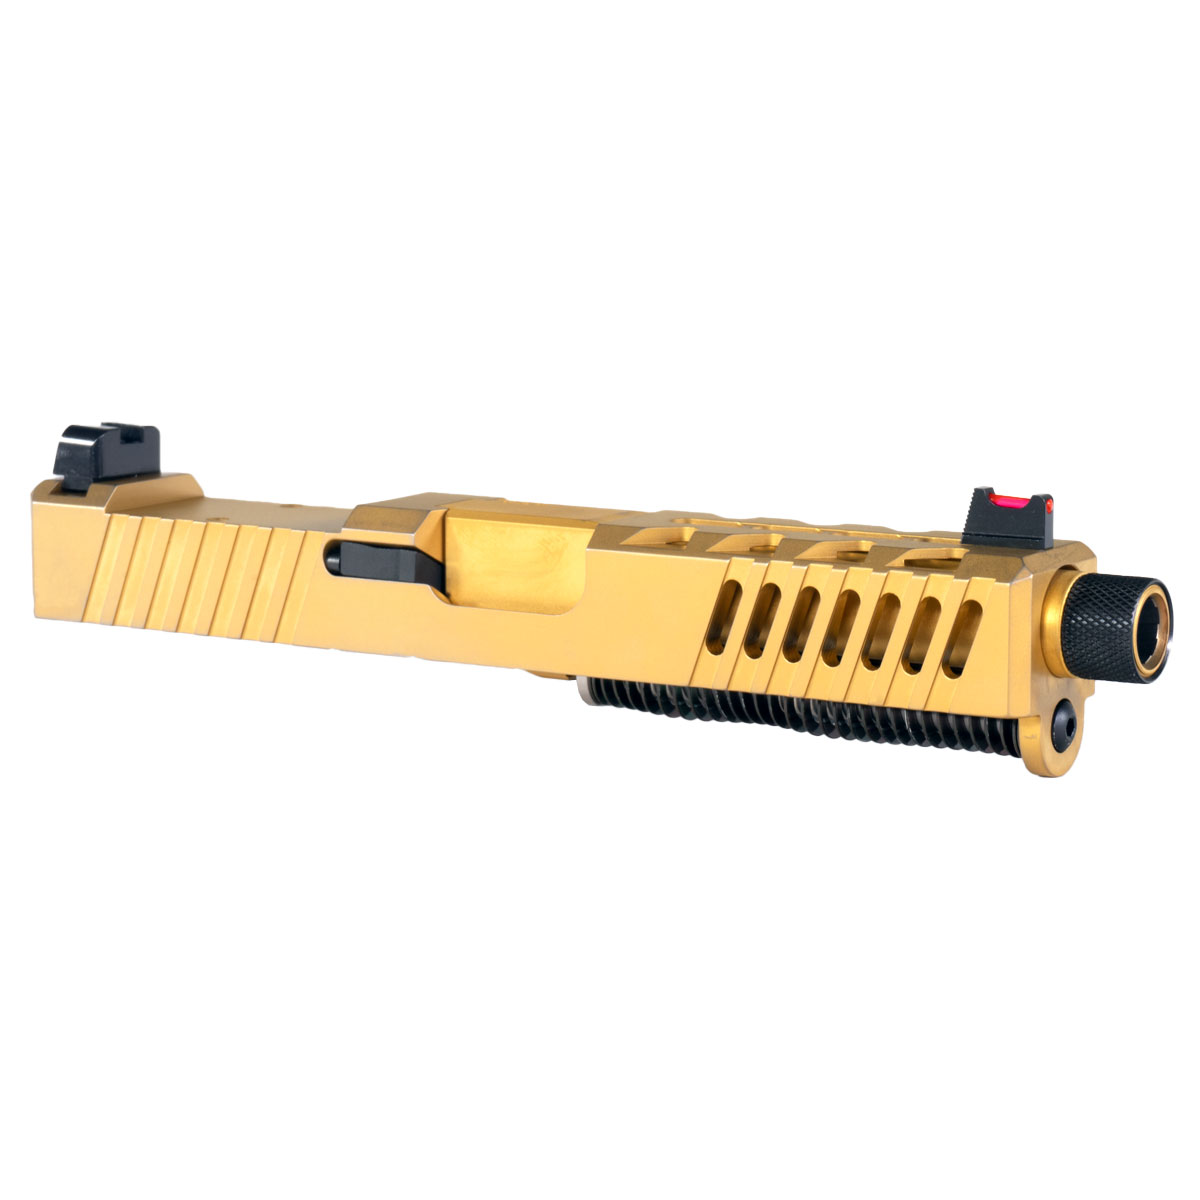 DD 'AU-197' 9mm Complete Slide Kit - Glock 19 Gen 1-3 Compatible